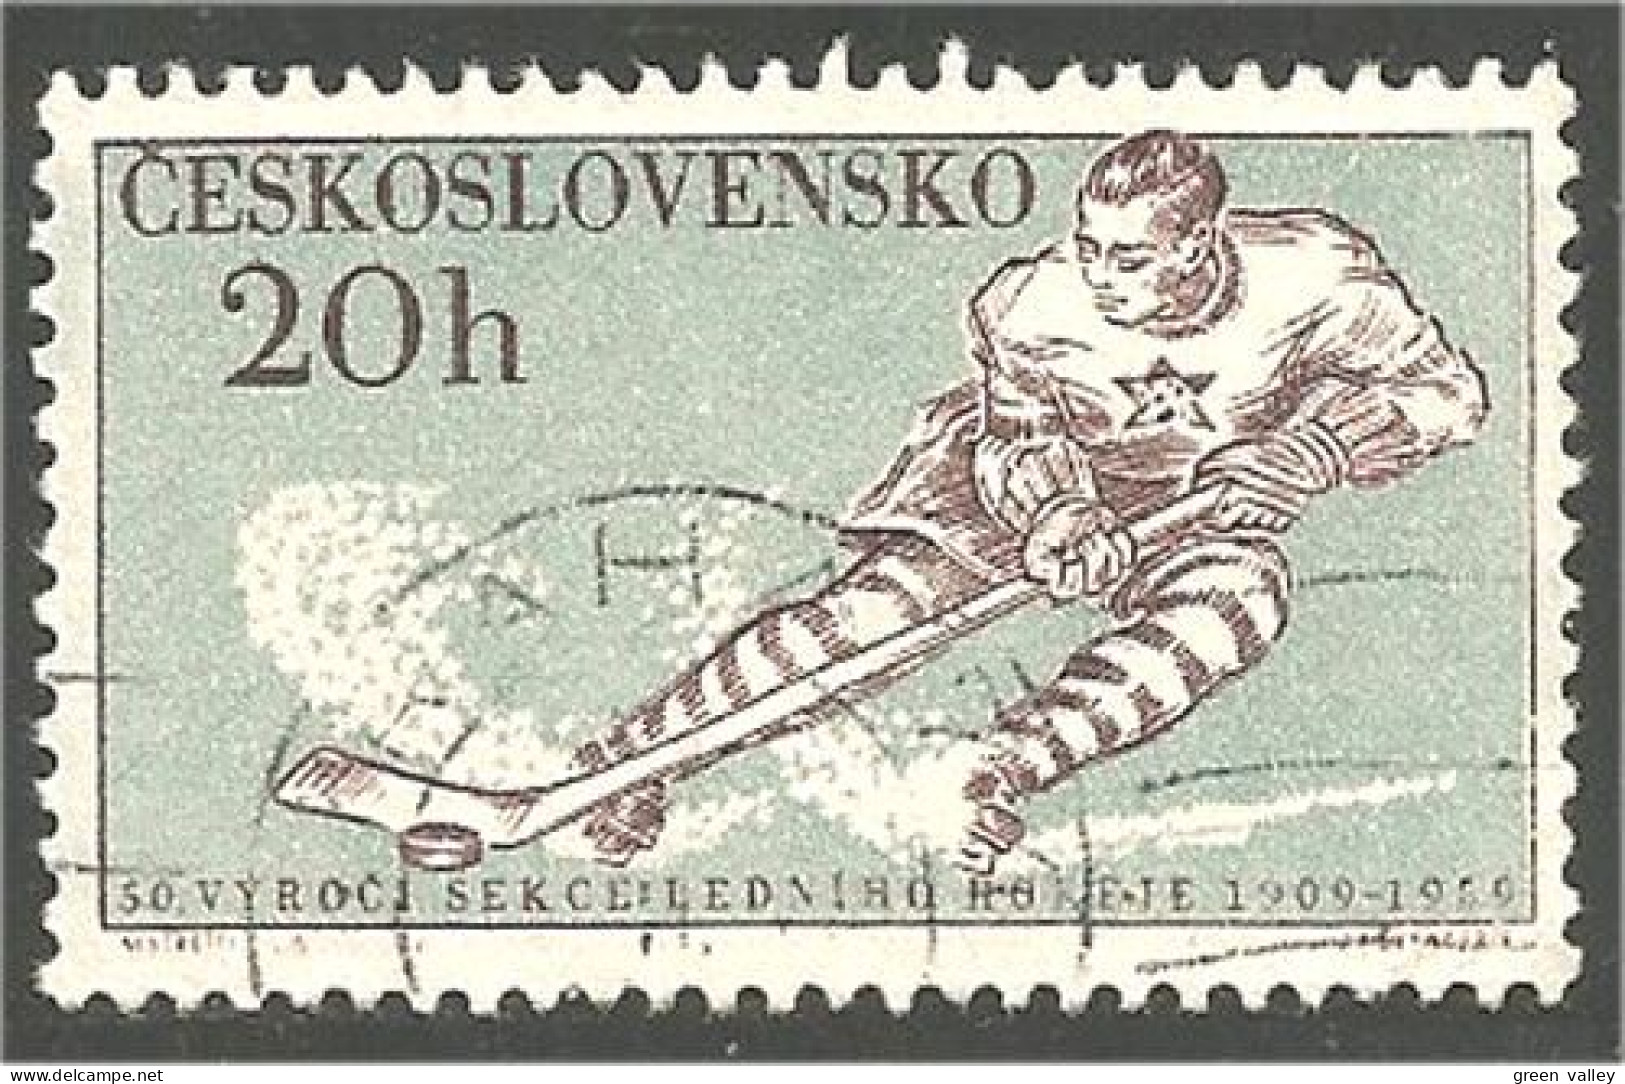 290 Czechoslovakia Ice Hockey Glace Eishockey (CZE-220) - Jockey (sobre Hielo)